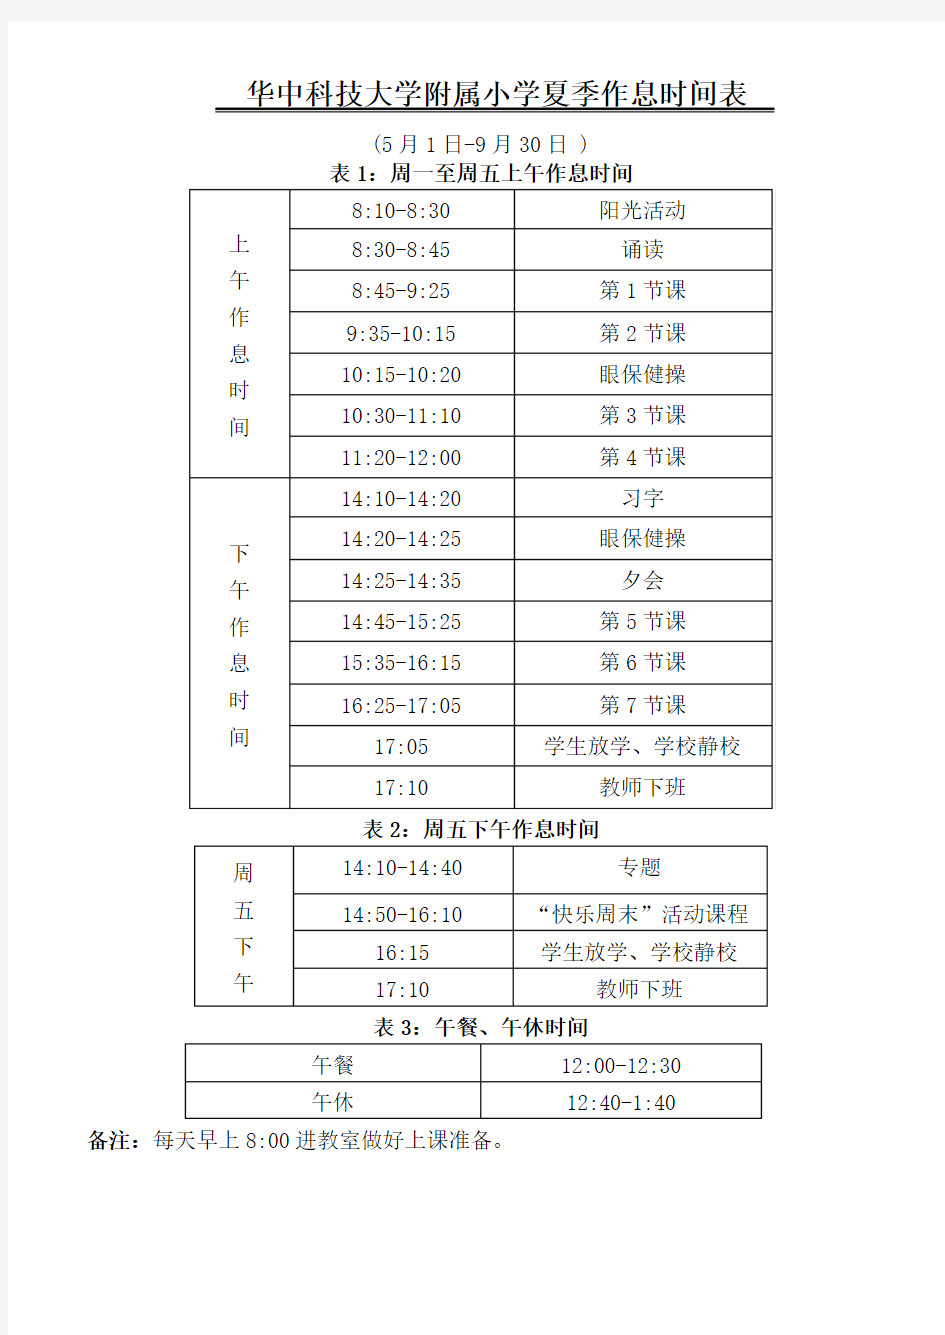 华中科技大学附属小学夏季作息时间表